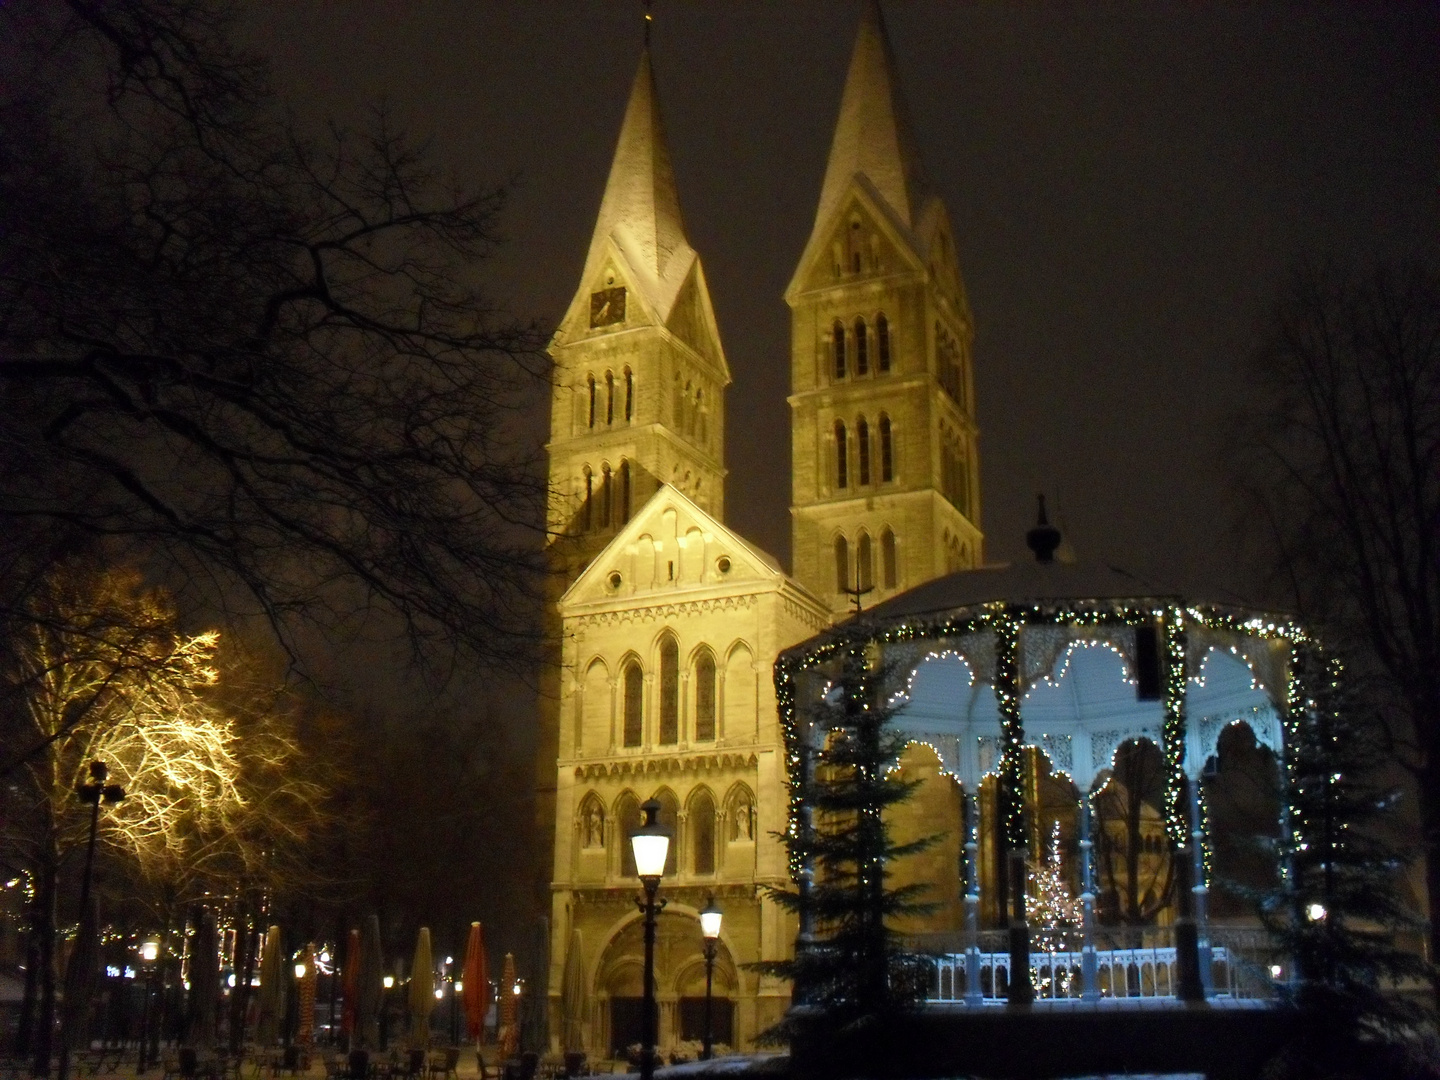 Weihnachten in Roermond 2010